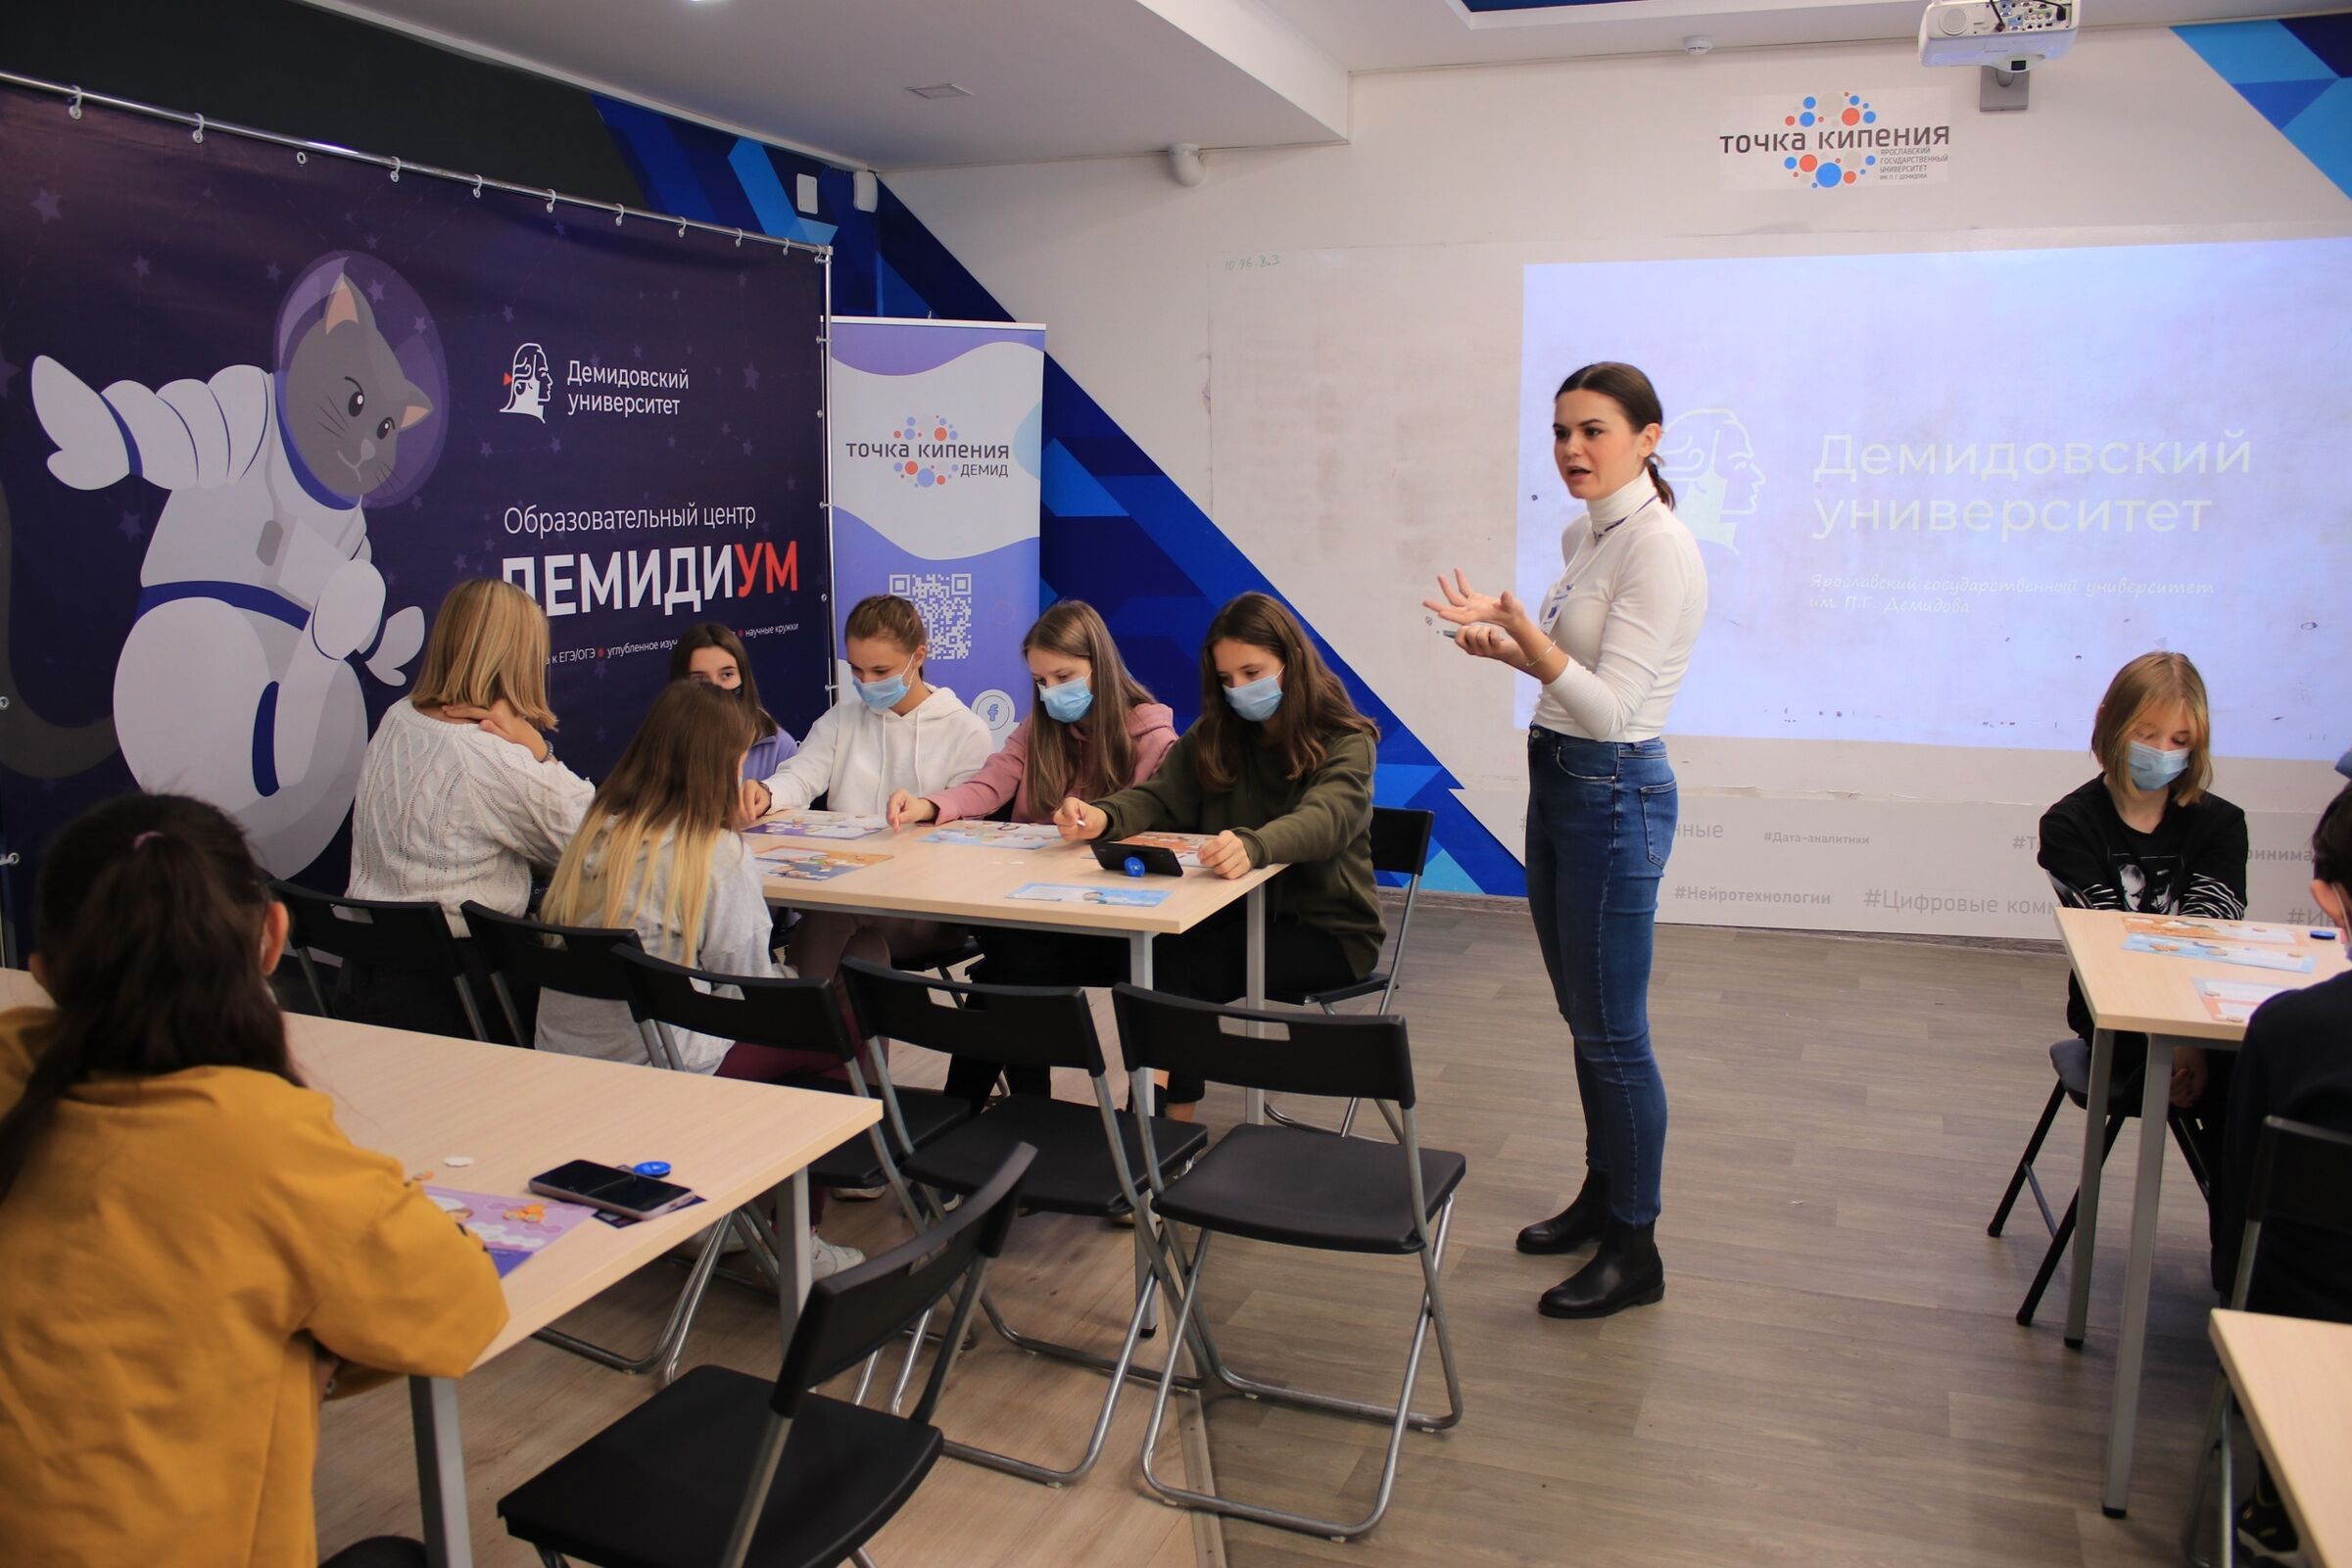 Ярославские ВУЗы готовятся координировать свою работу для развития науки в стране и регионе